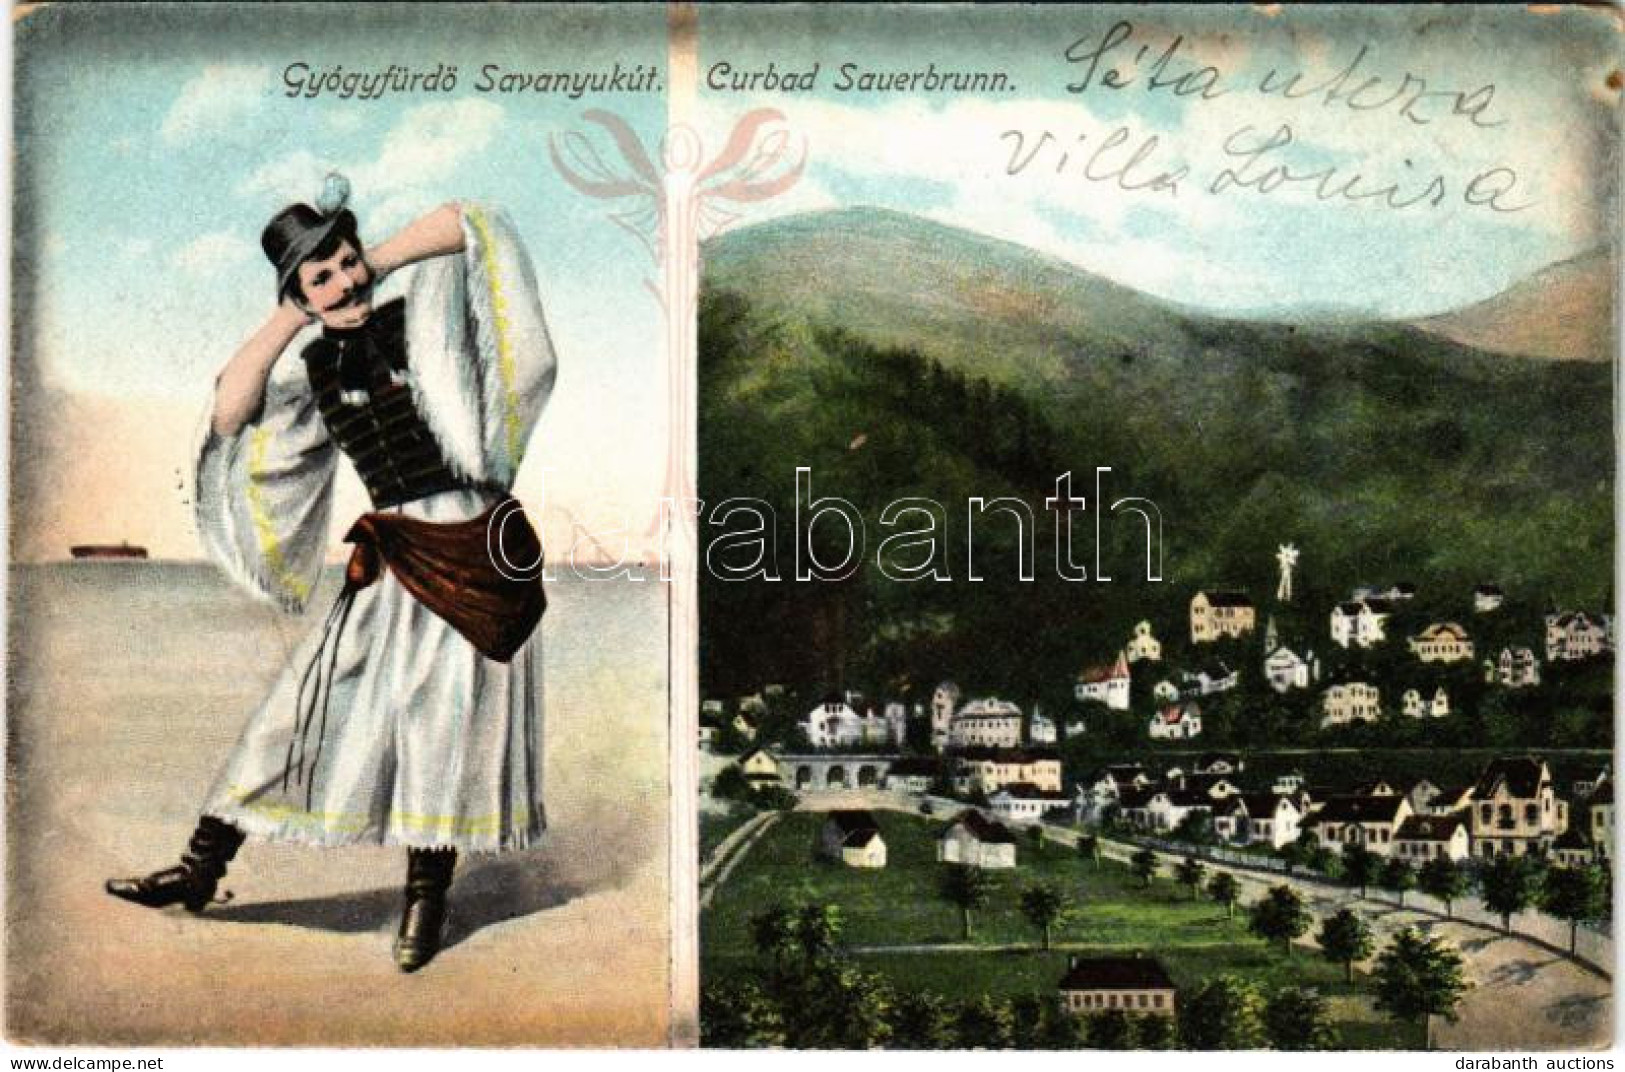 T2/T3 1910 Savanyúkút, Sauerbrunn; Gyógyfürdő, Folklór / Curbad / Spa, Folklore. M. Stelzmüller. Art Nouveau - Non Classés